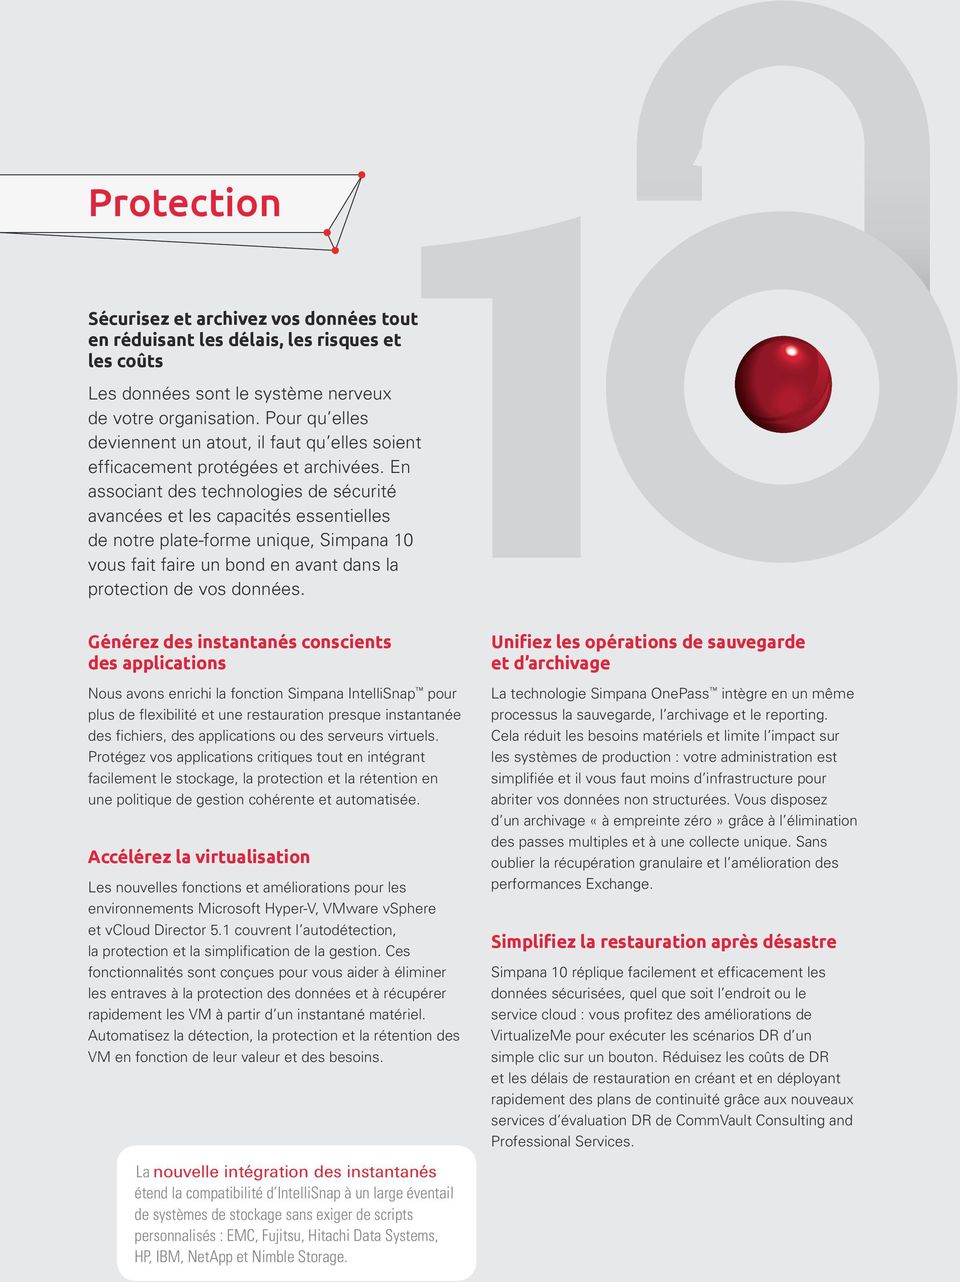 En associant des technologies de sécurité avancées et les capacités essentielles de notre plate-forme unique, Simpana 10 vous fait faire un bond en avant dans la protection de vos données.